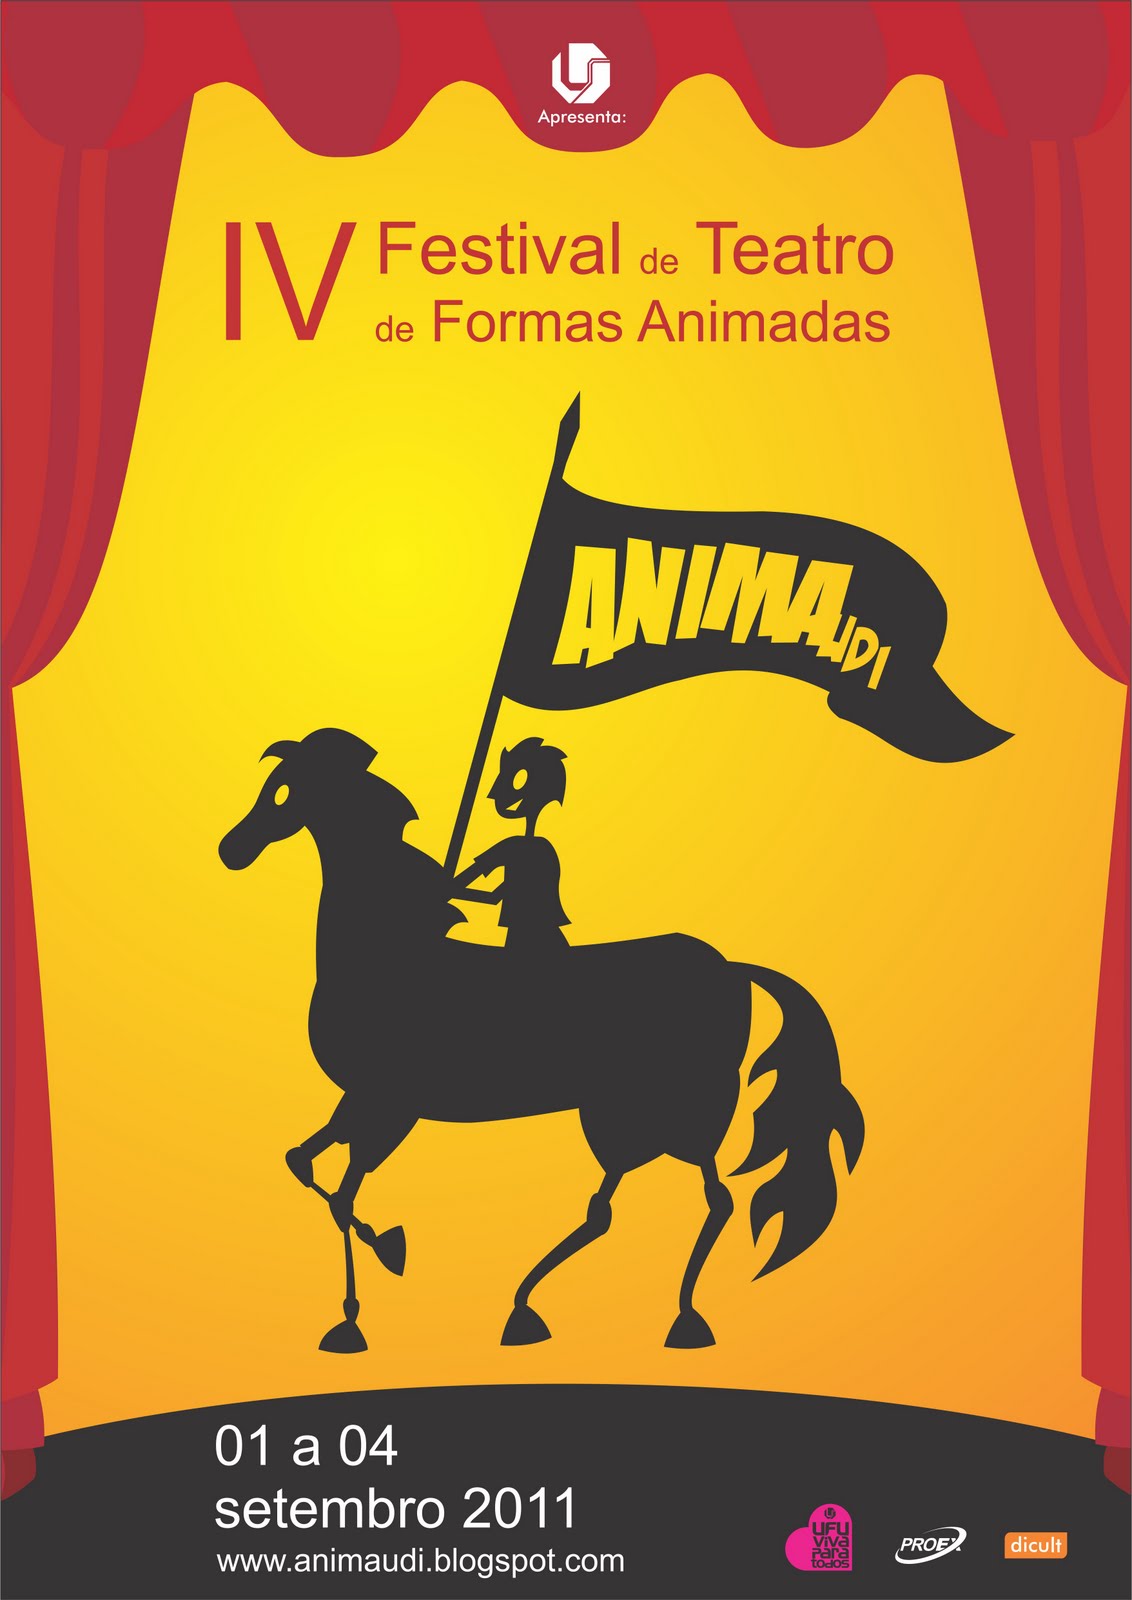 ANIMA UDI - Festival de Teatro de Formas Animadas